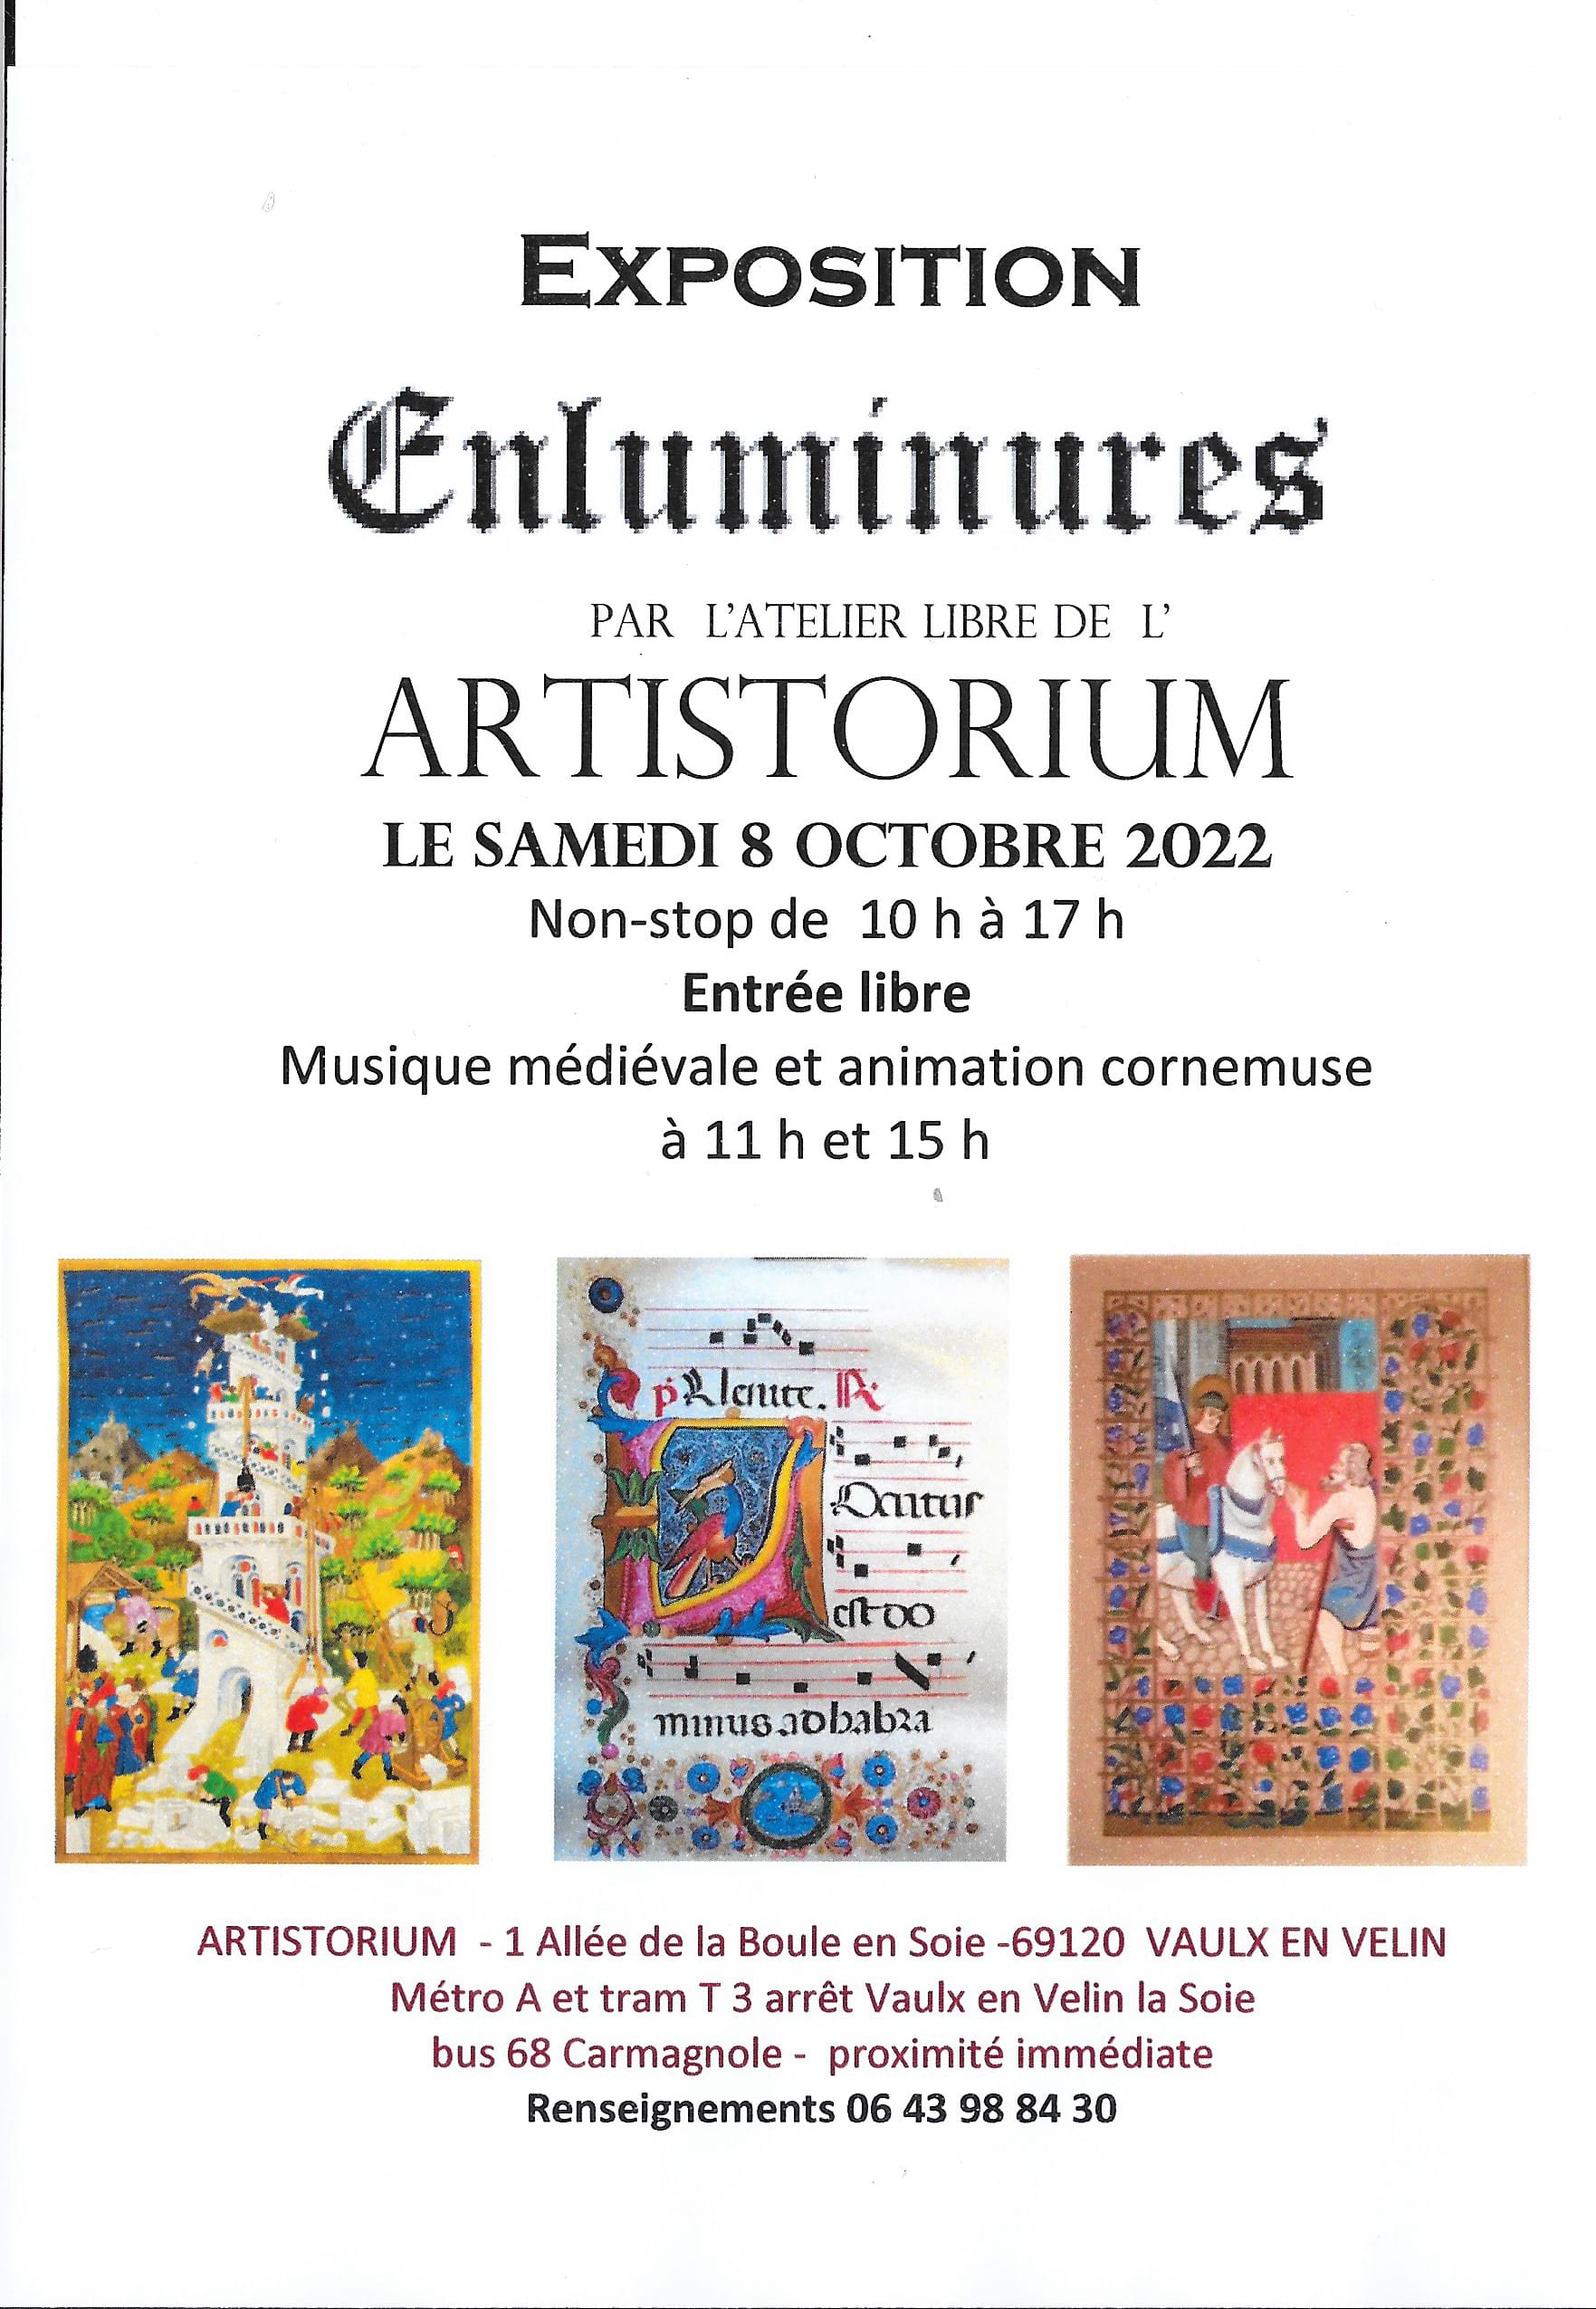 Exposition Artistorium du 08.10.22 